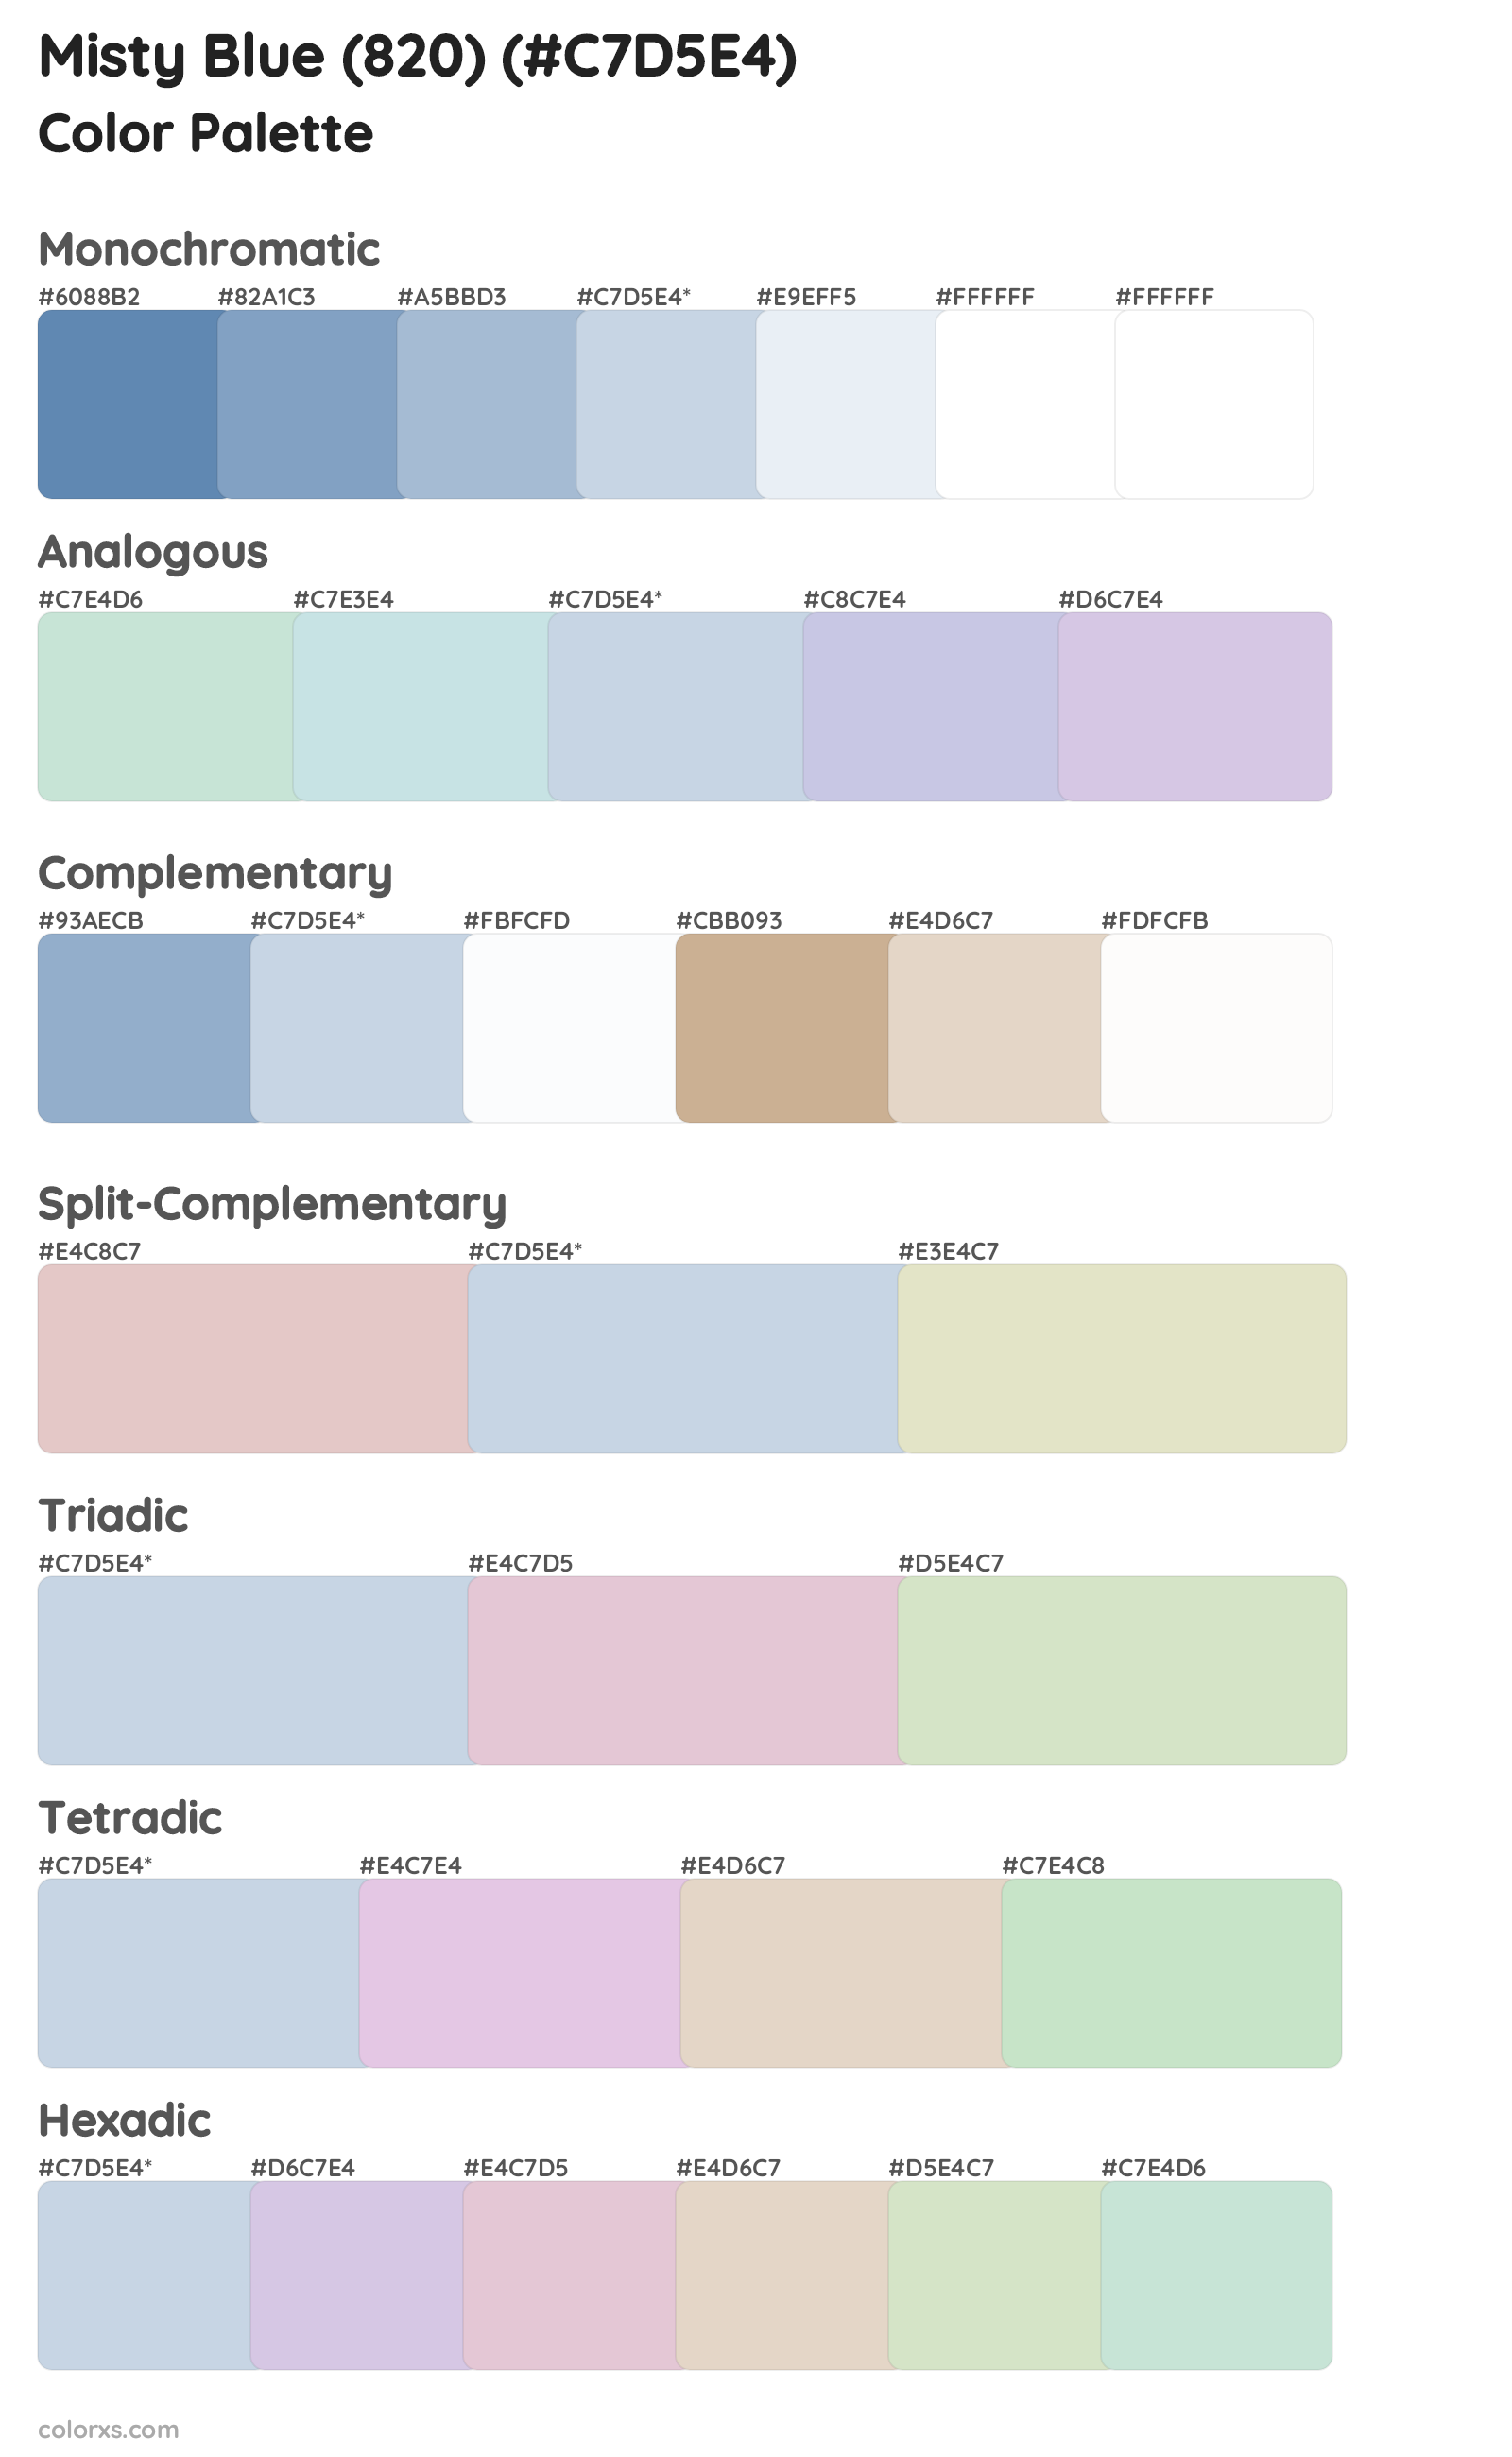 Misty Blue (820) Color Scheme Palettes